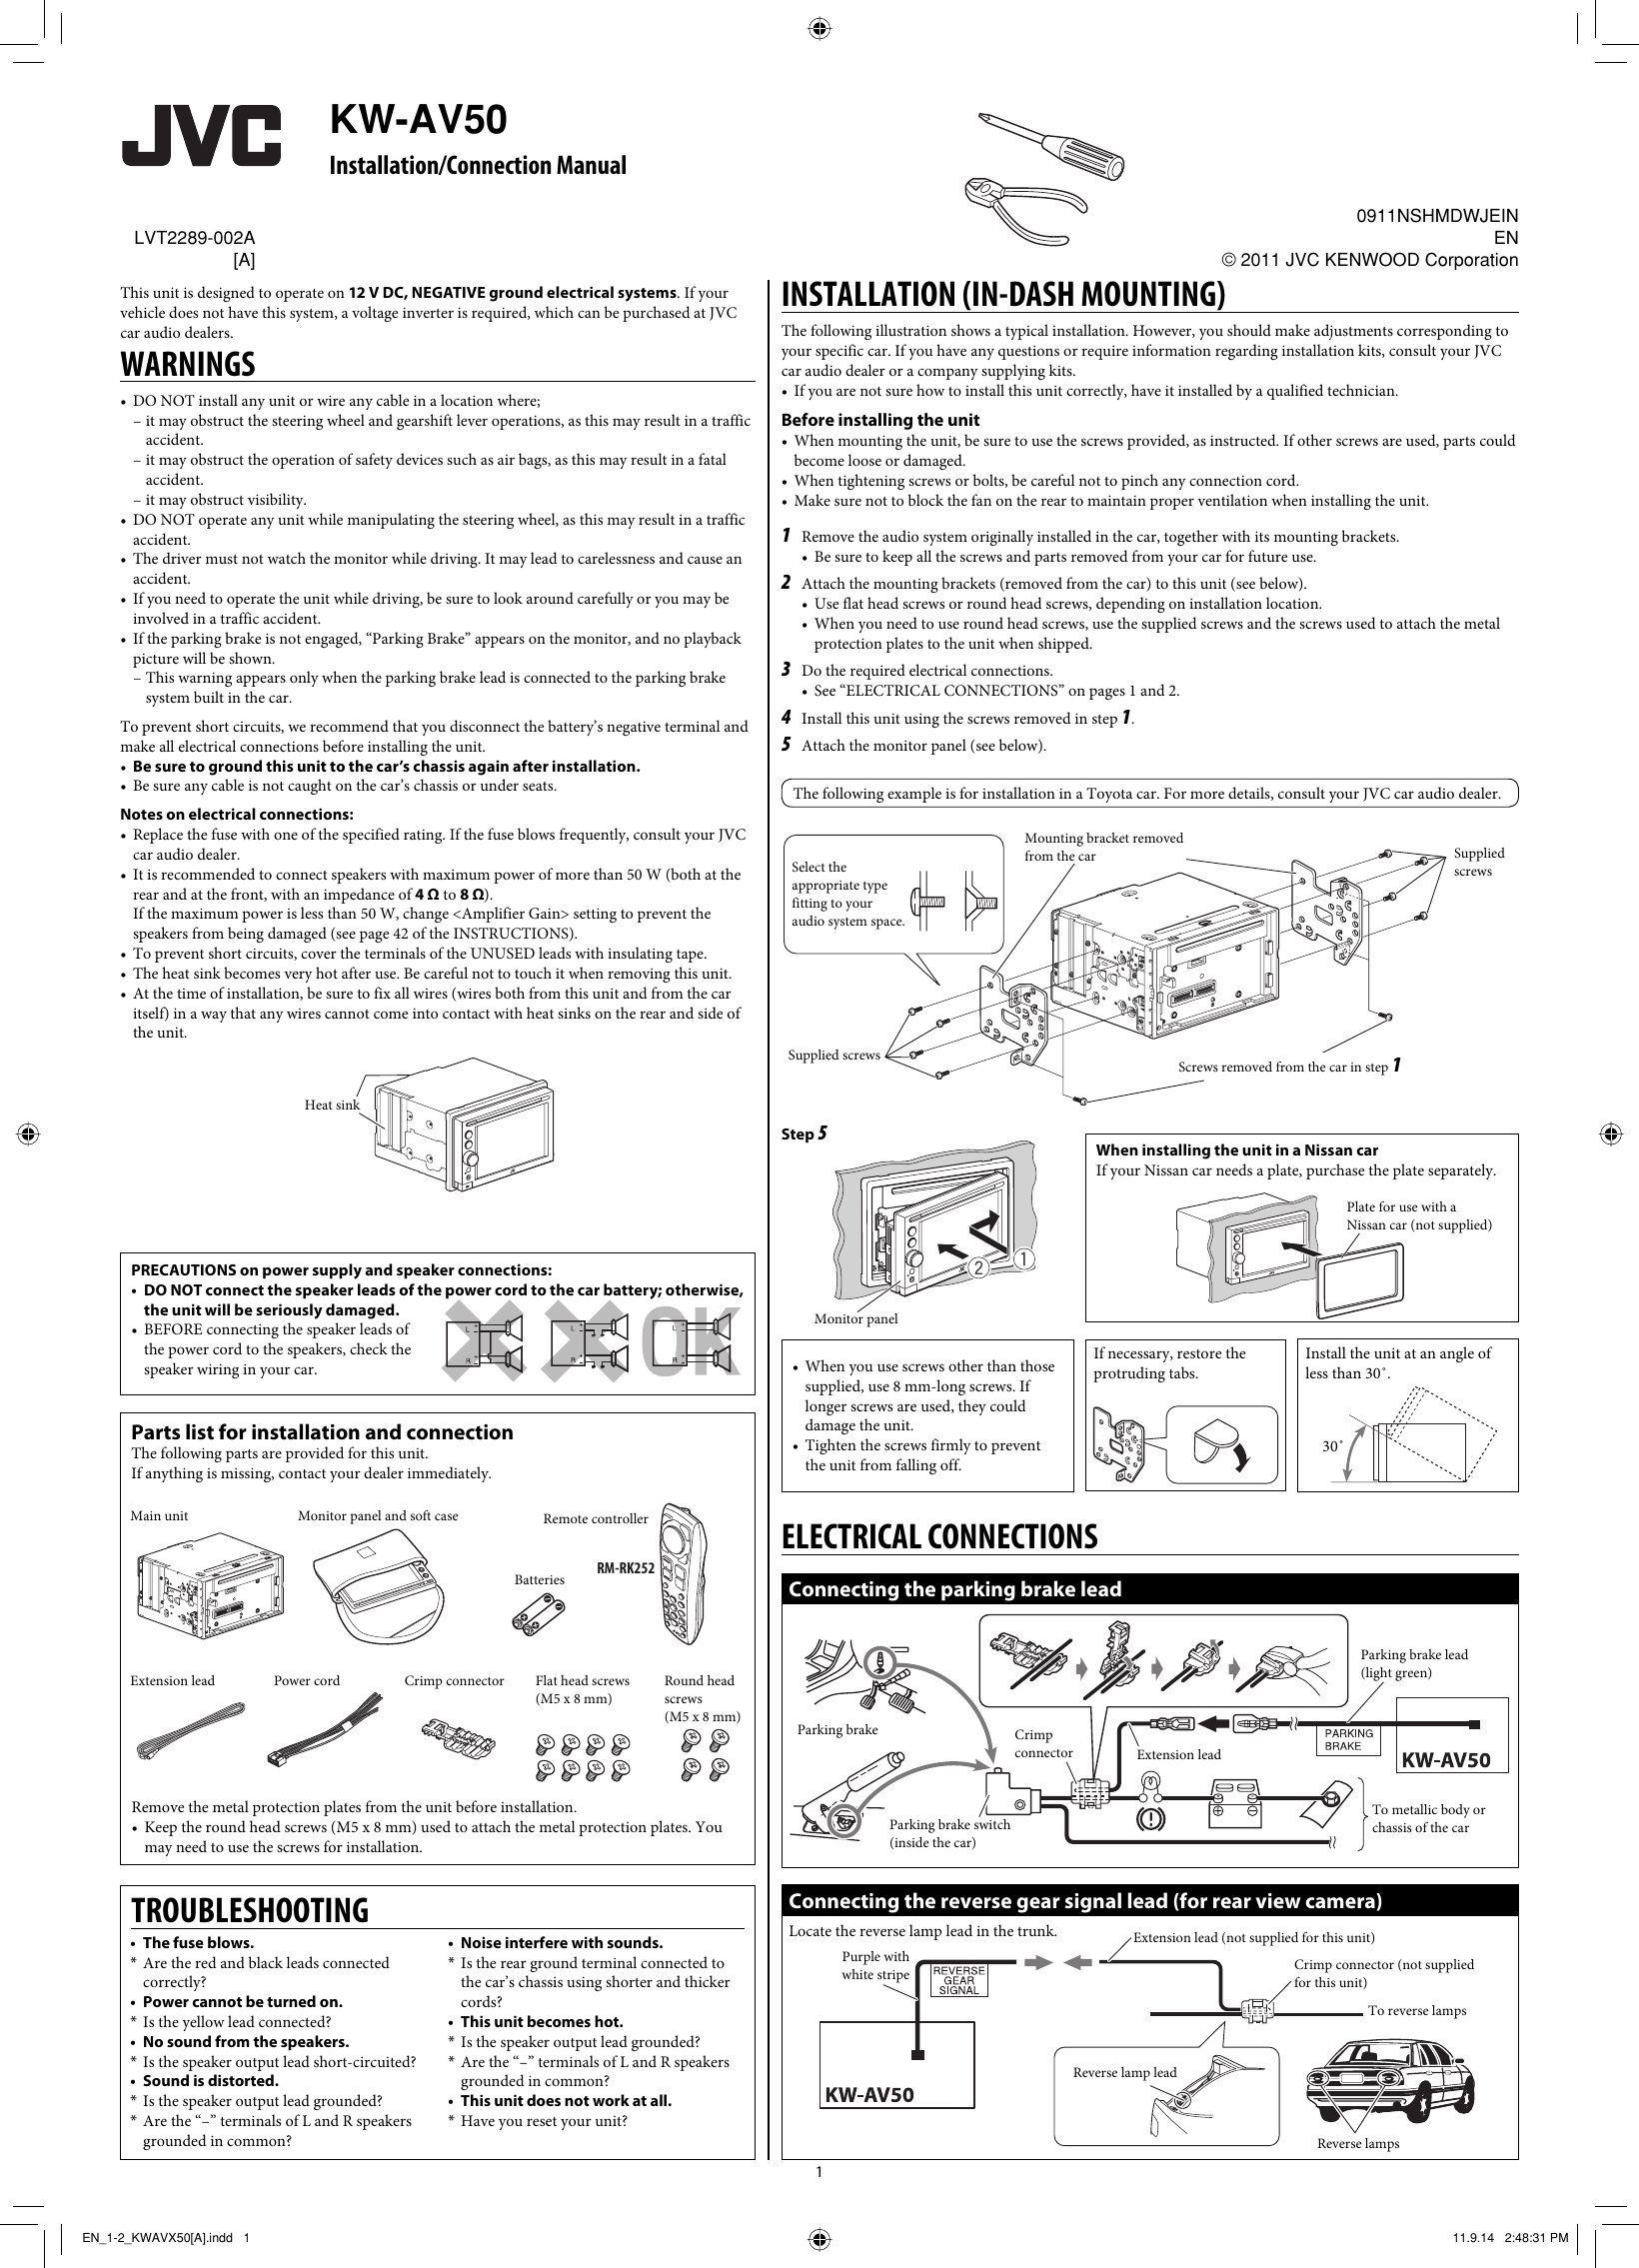 Page 1 of 2 - JVC KW-AV50A KW-AV50[A] Installation Manual User LVT2289-002A